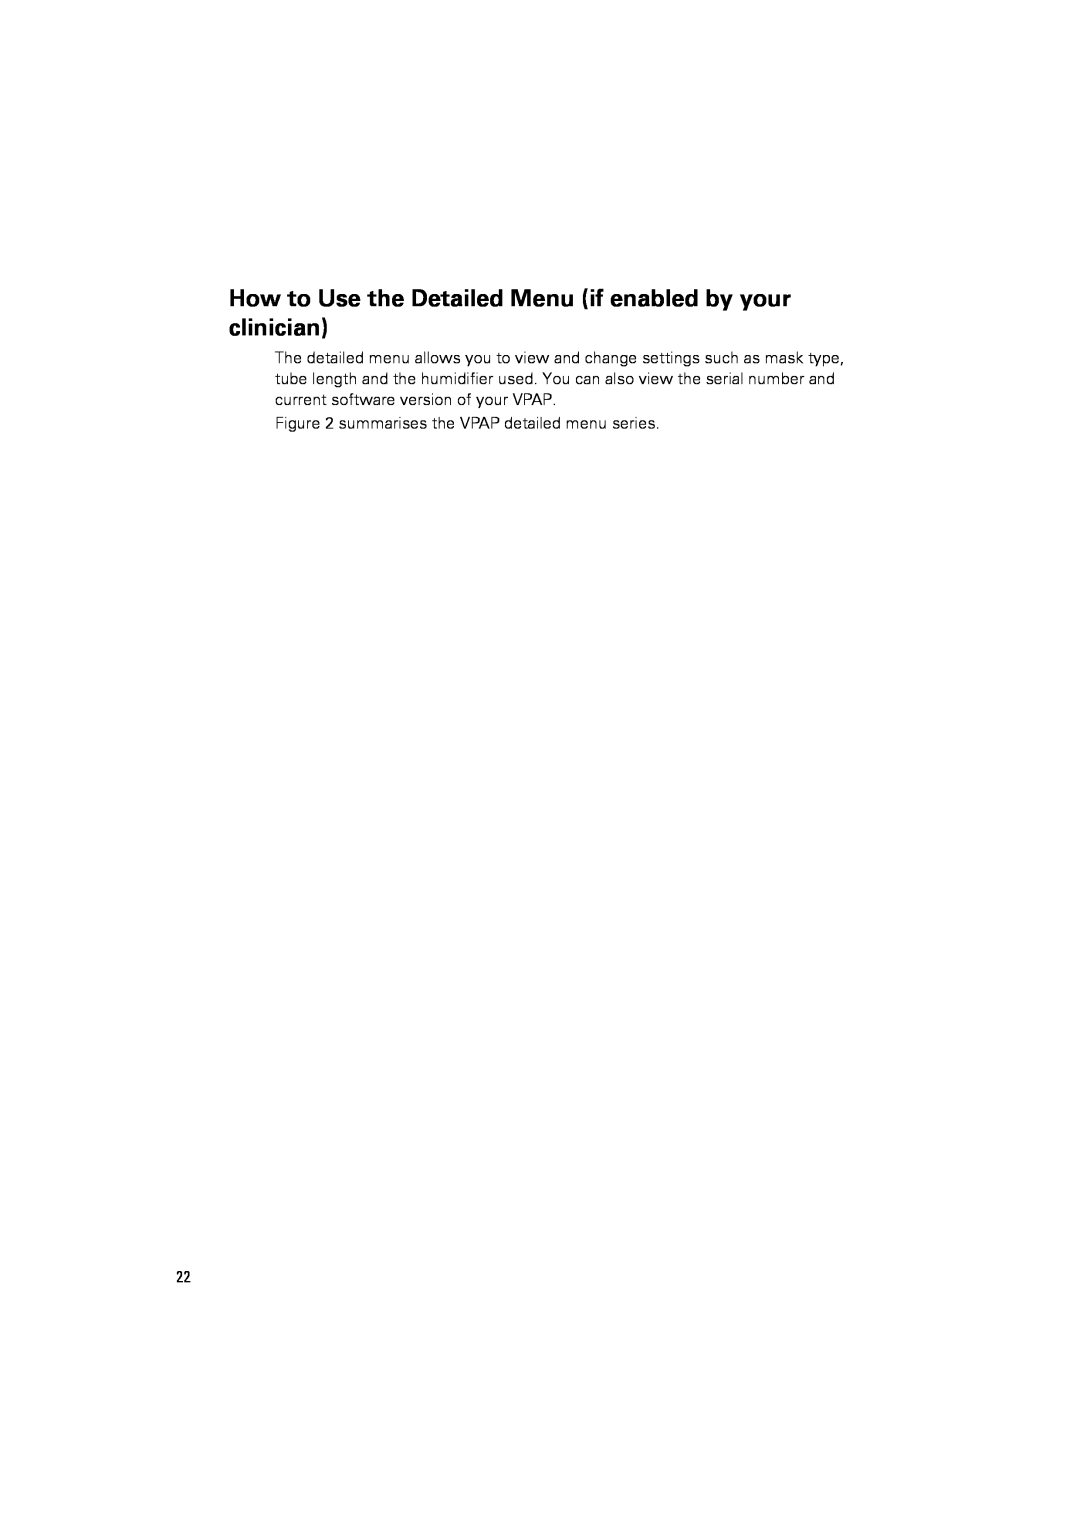 ResMed III & III ST user manual summarises the VPAP detailed menu series 